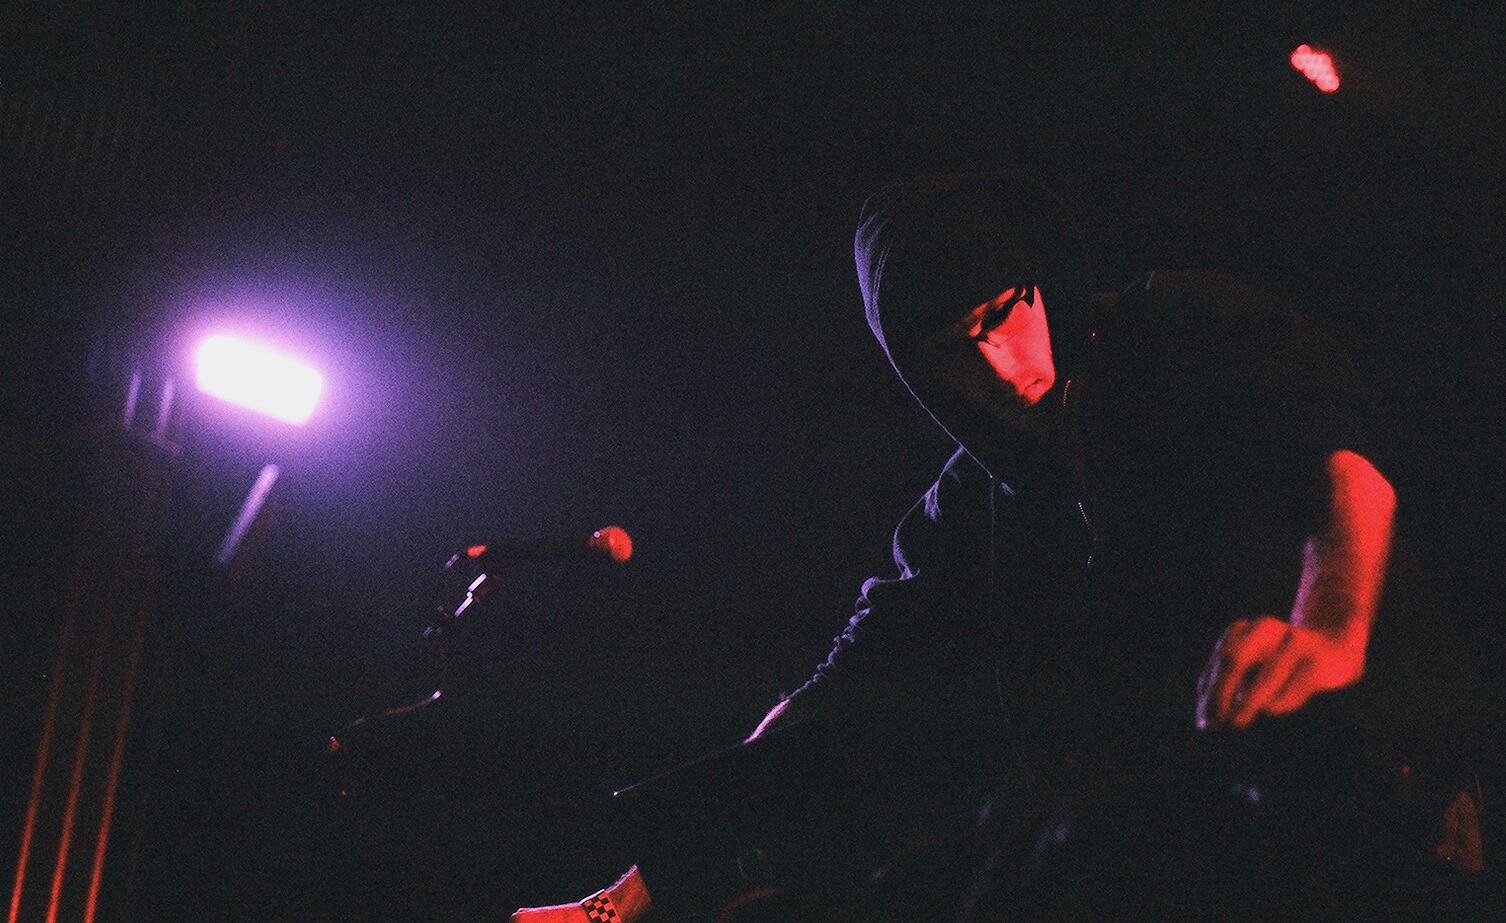 Tyler Etters at Mayne Stage © Jordan Nelson, 2014